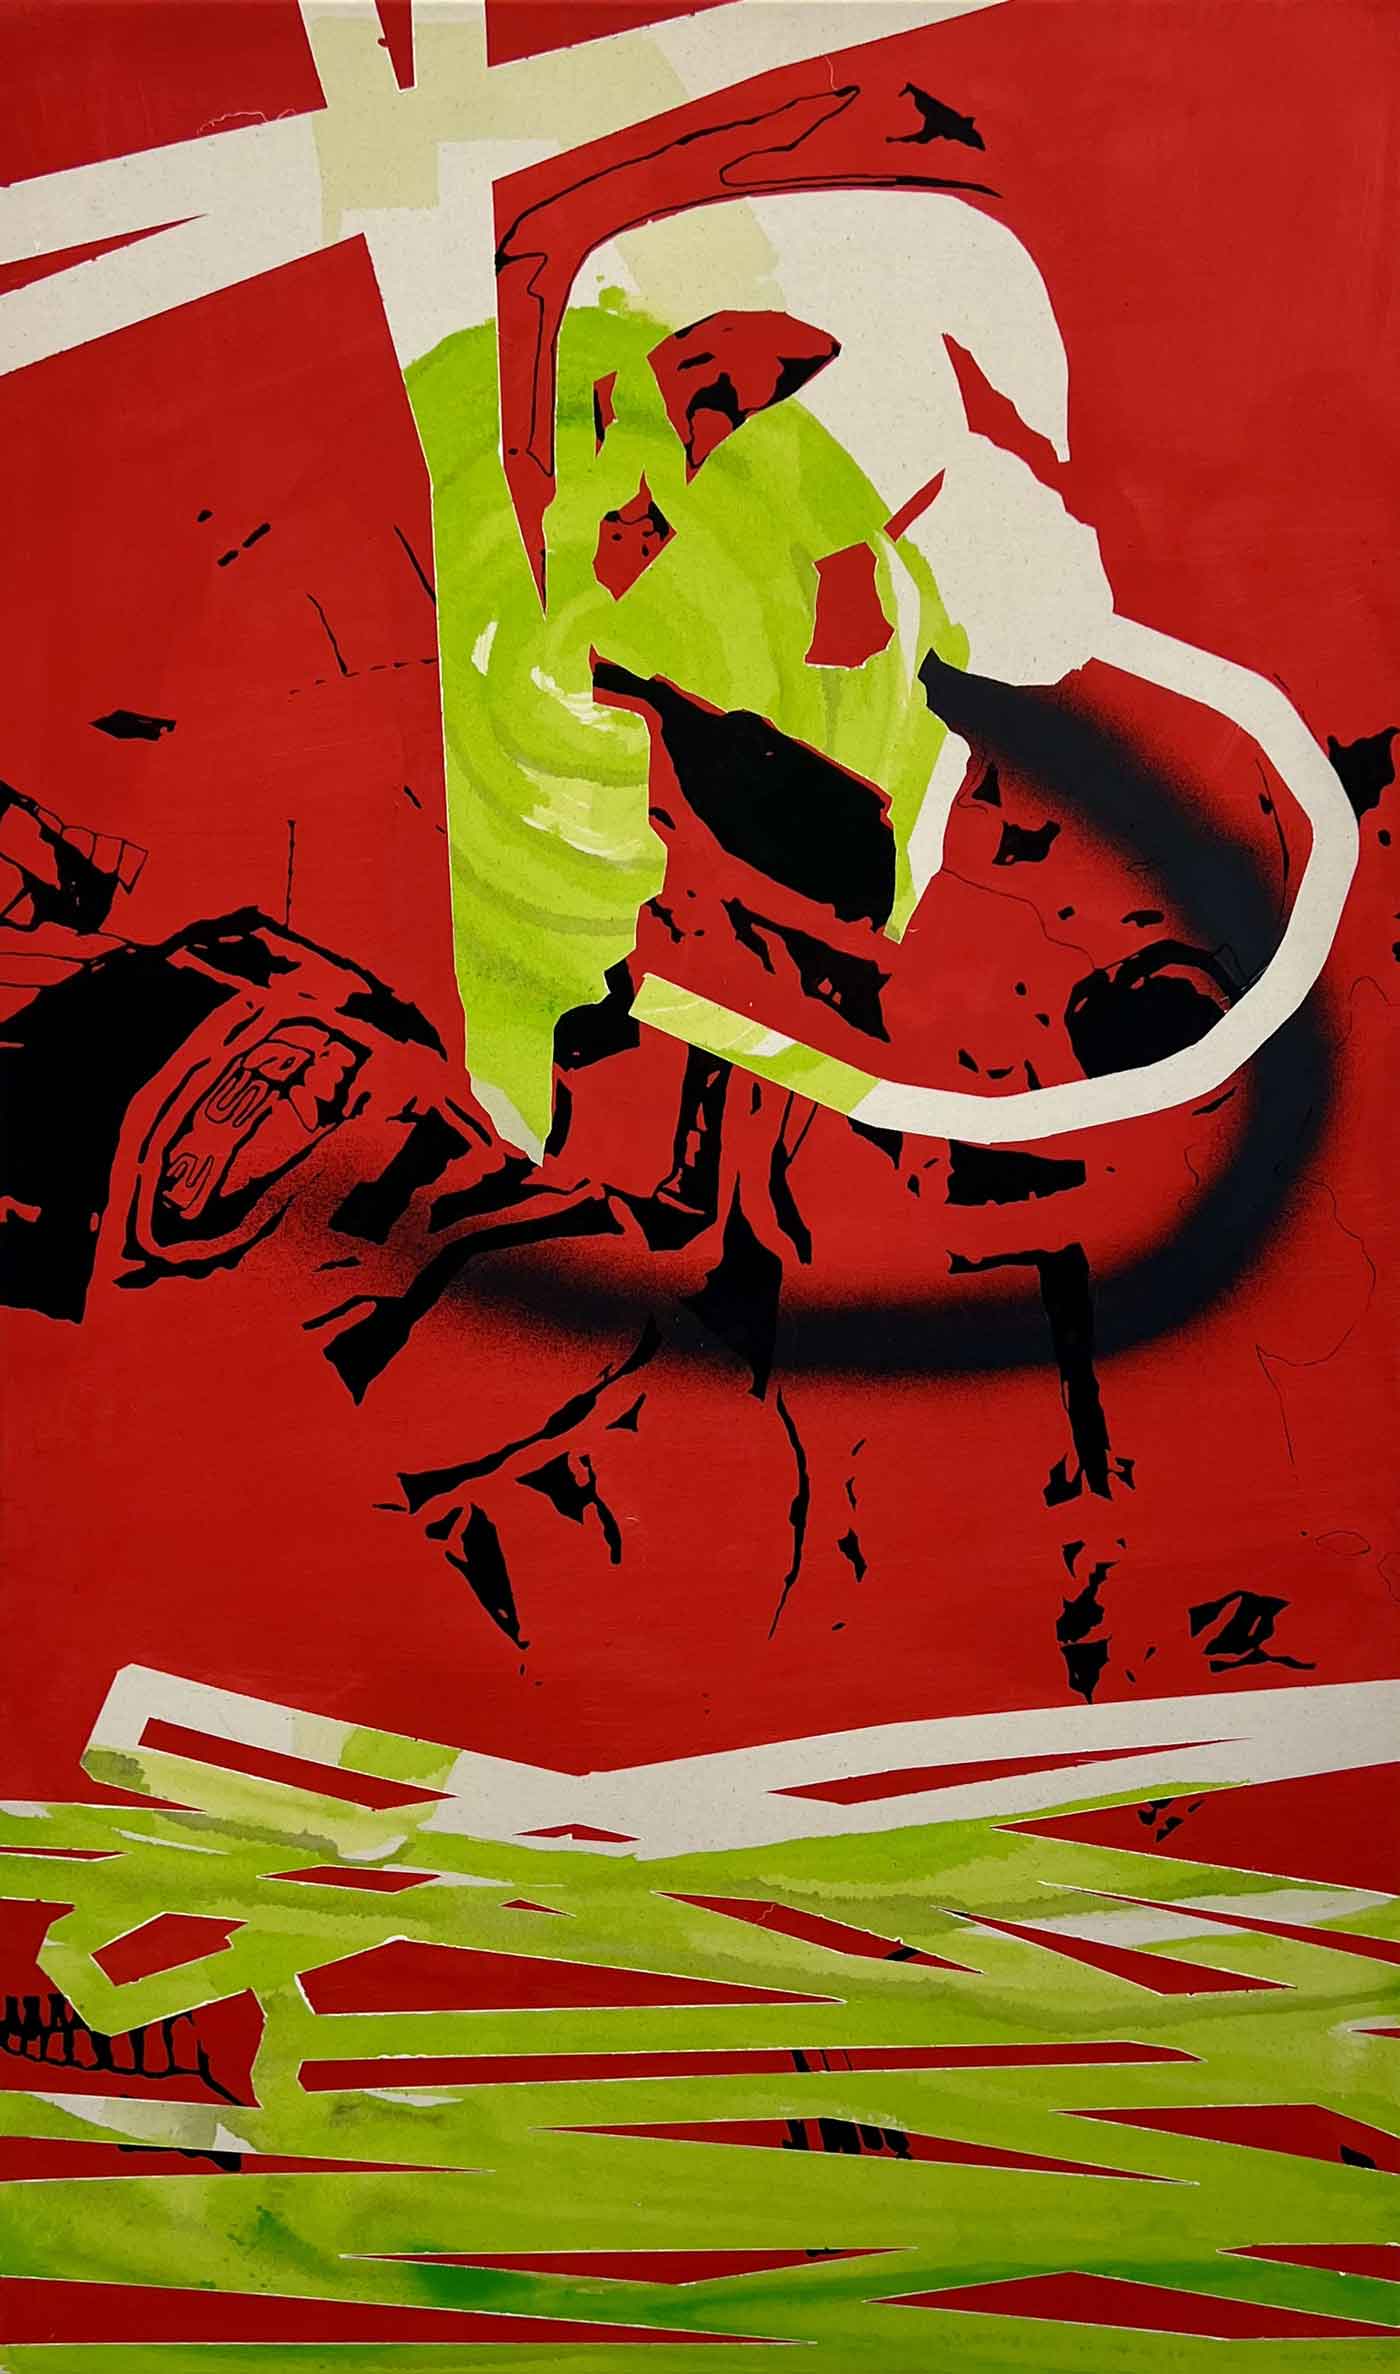 Acrylbild auf Baumwolle mit giftgrünen Formen auf rotem Hintergrund